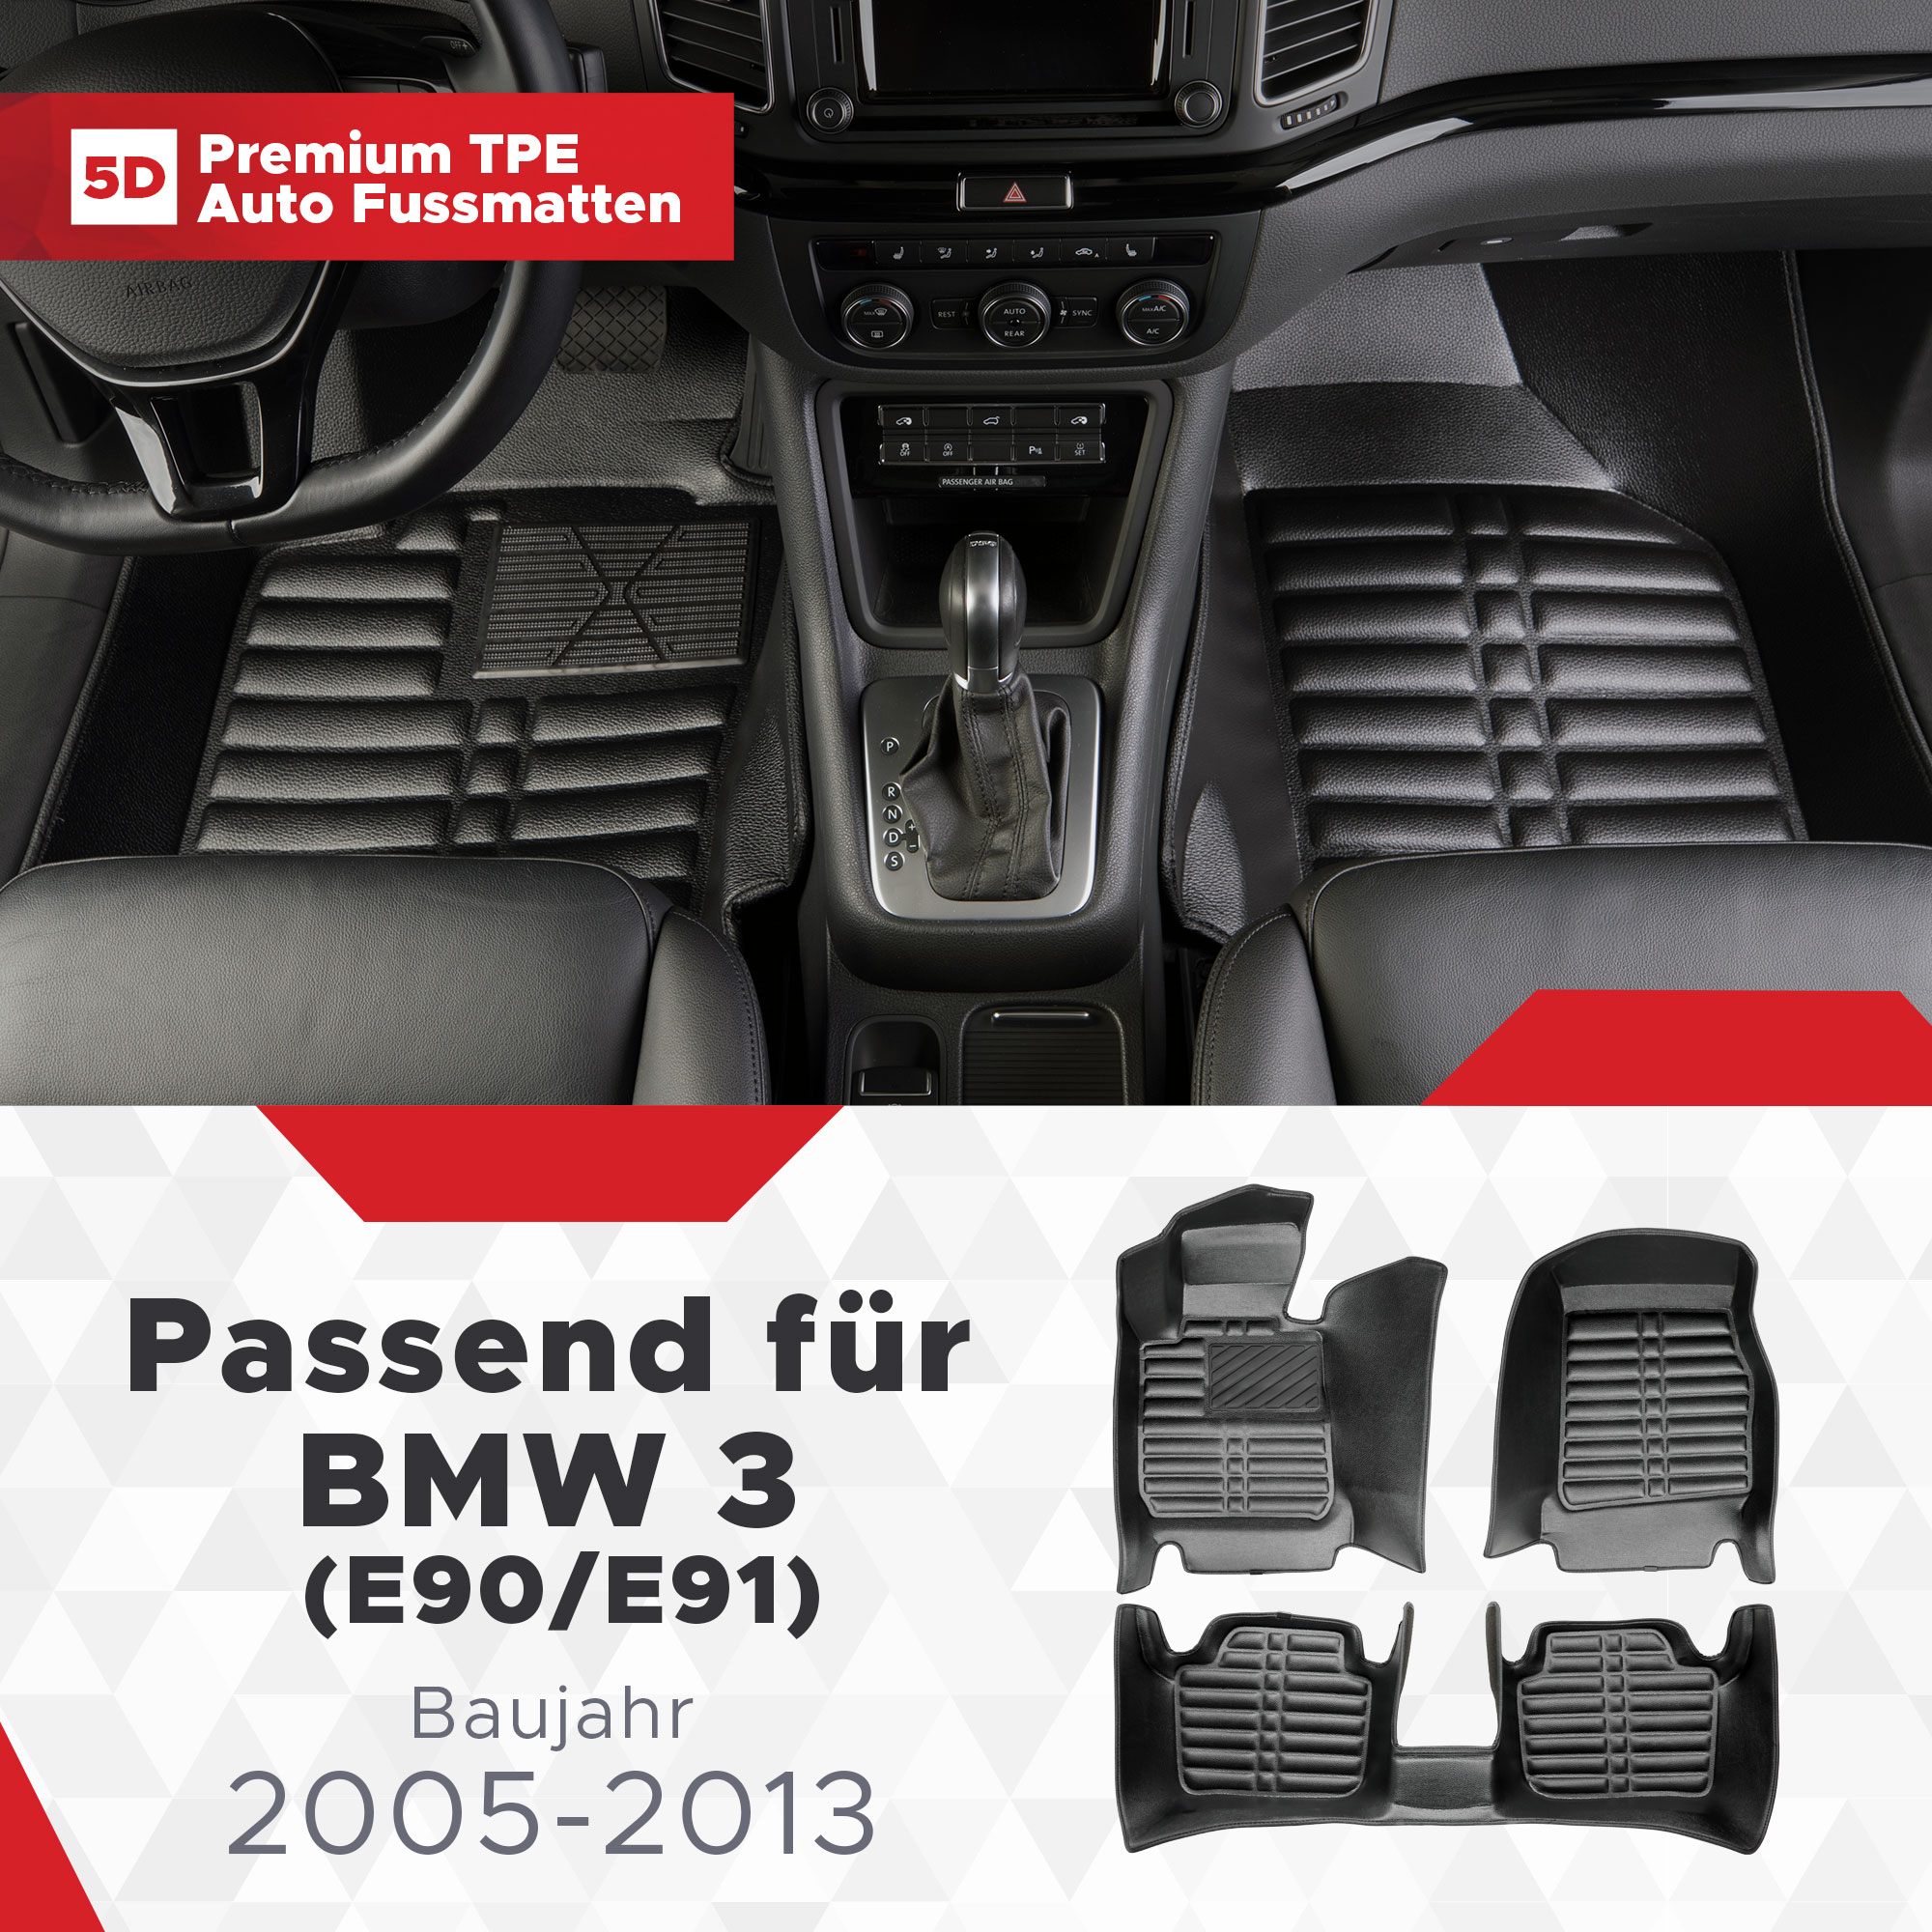 BMW 2005-2013 Fussmatten 5D 3 TPE (E90/E91) Bj